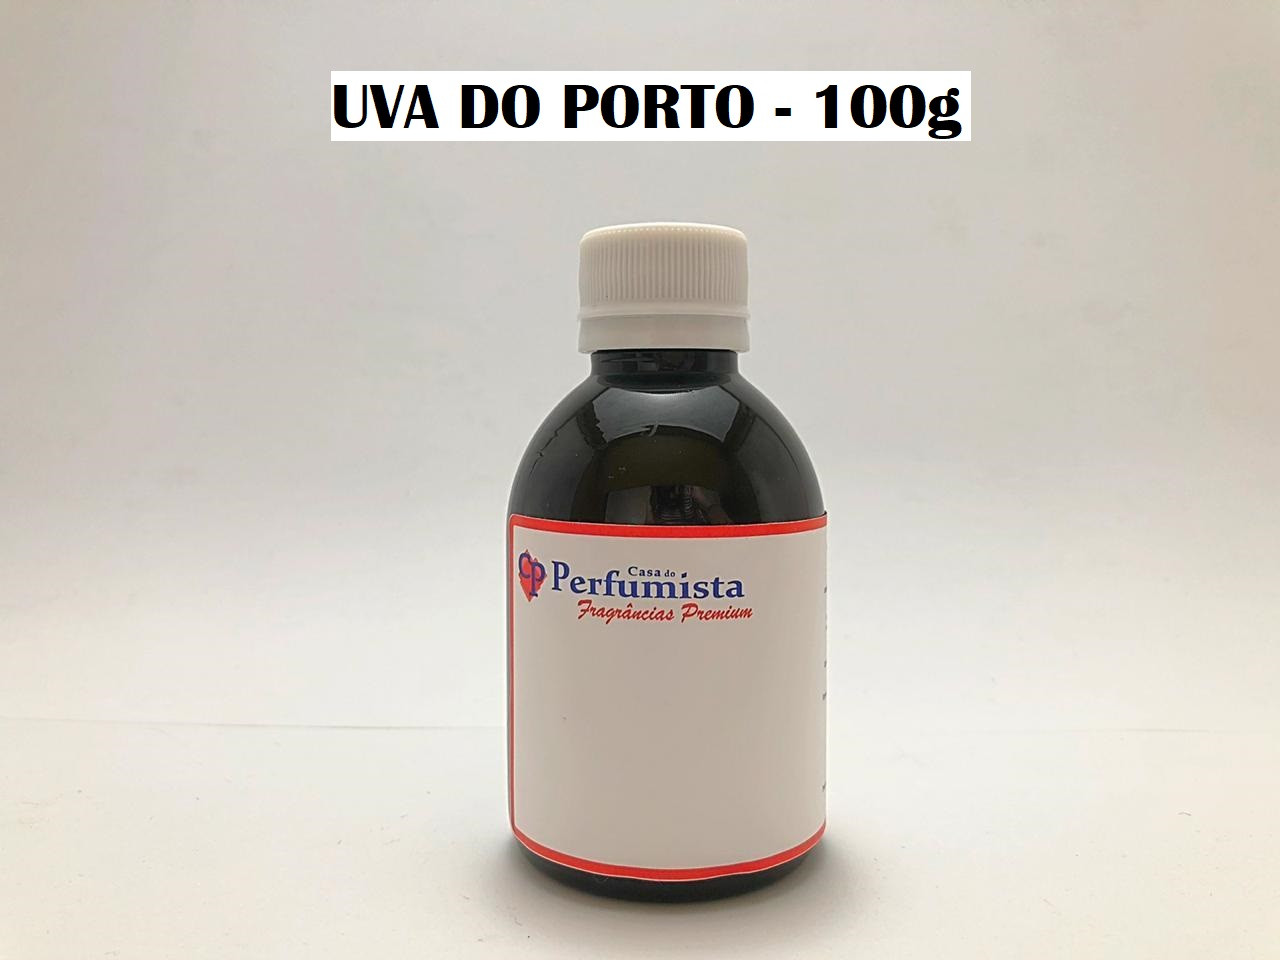 UVA DO PORTO - 100g